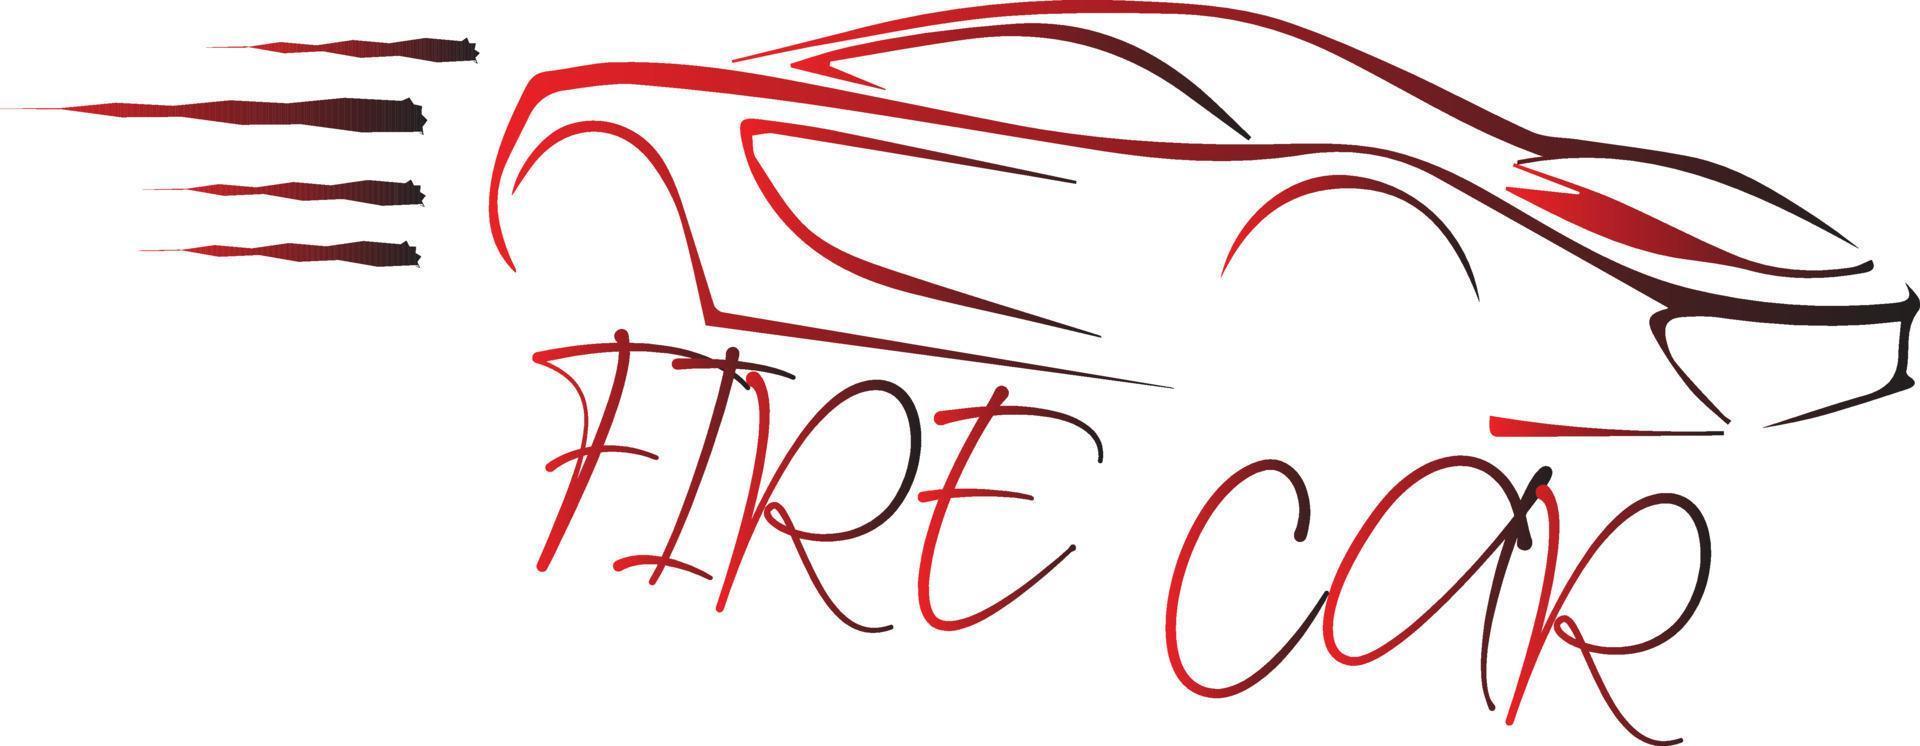 Fire Car Logo Vector File